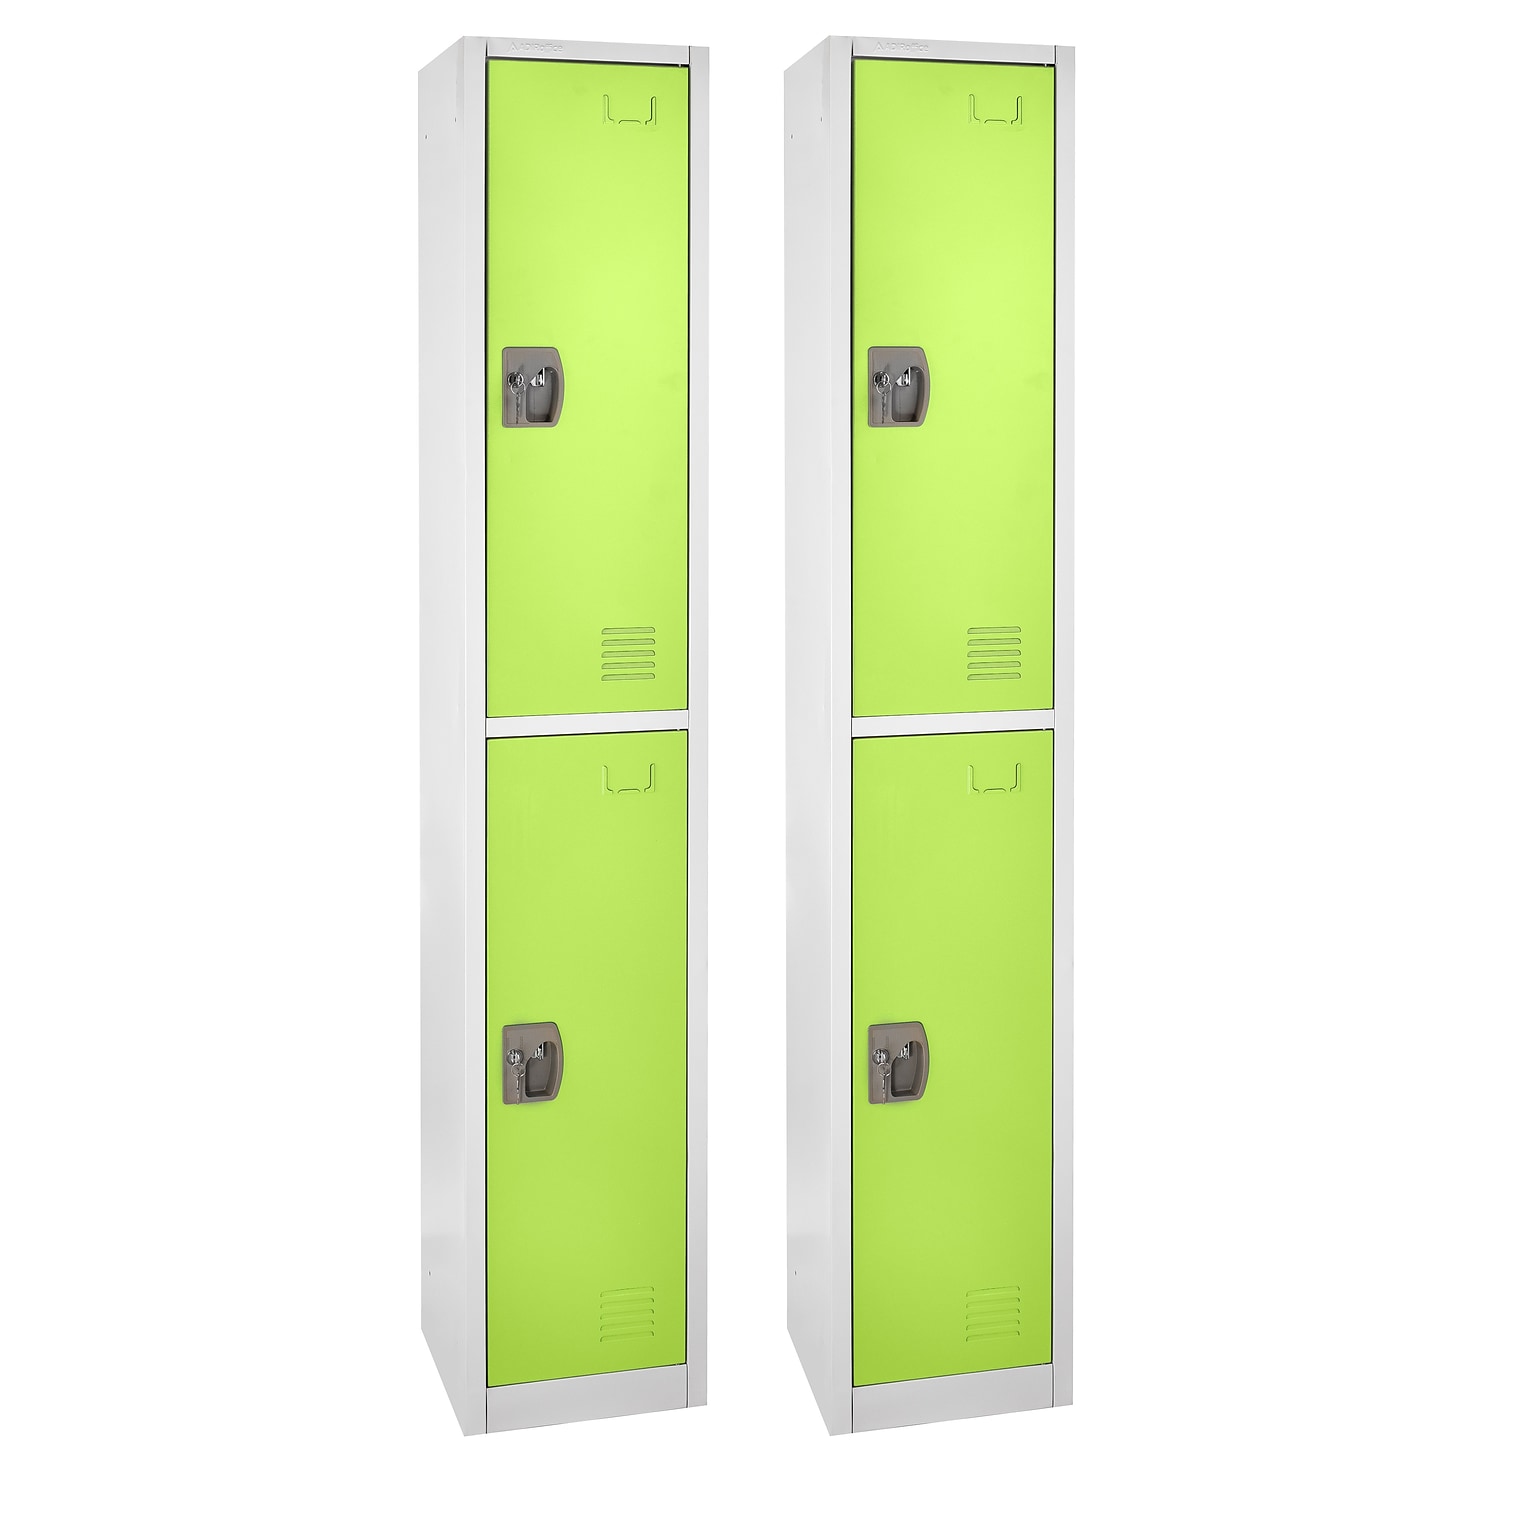 AdirOffice 72 2-Tier Key Lock Green Steel Storage Locker, 2/Pack (629-202-GRN-2PK)